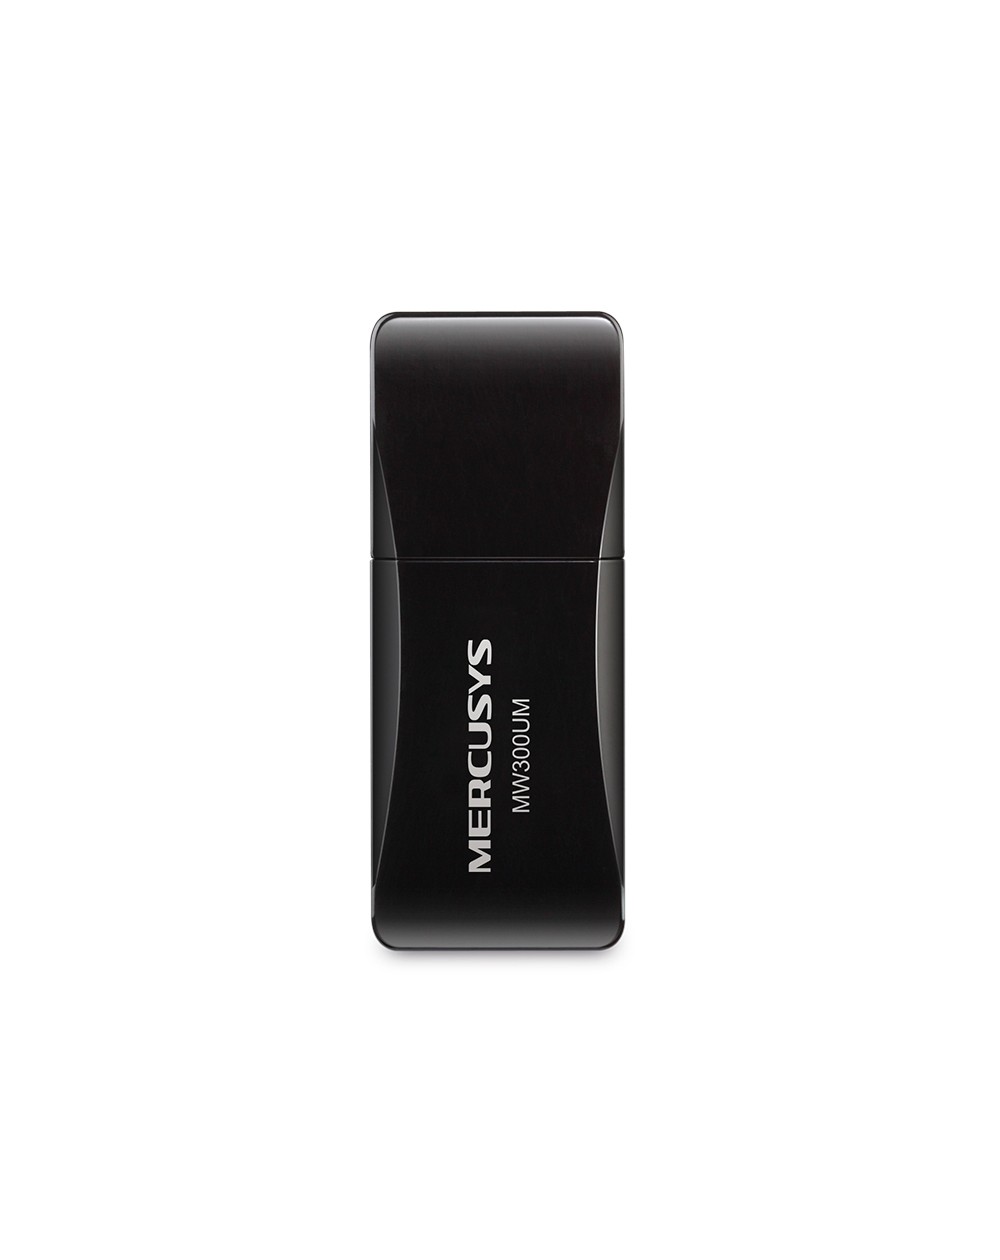 MERCUSYS Adaptateur USB sans fil N300 (MW300UM)